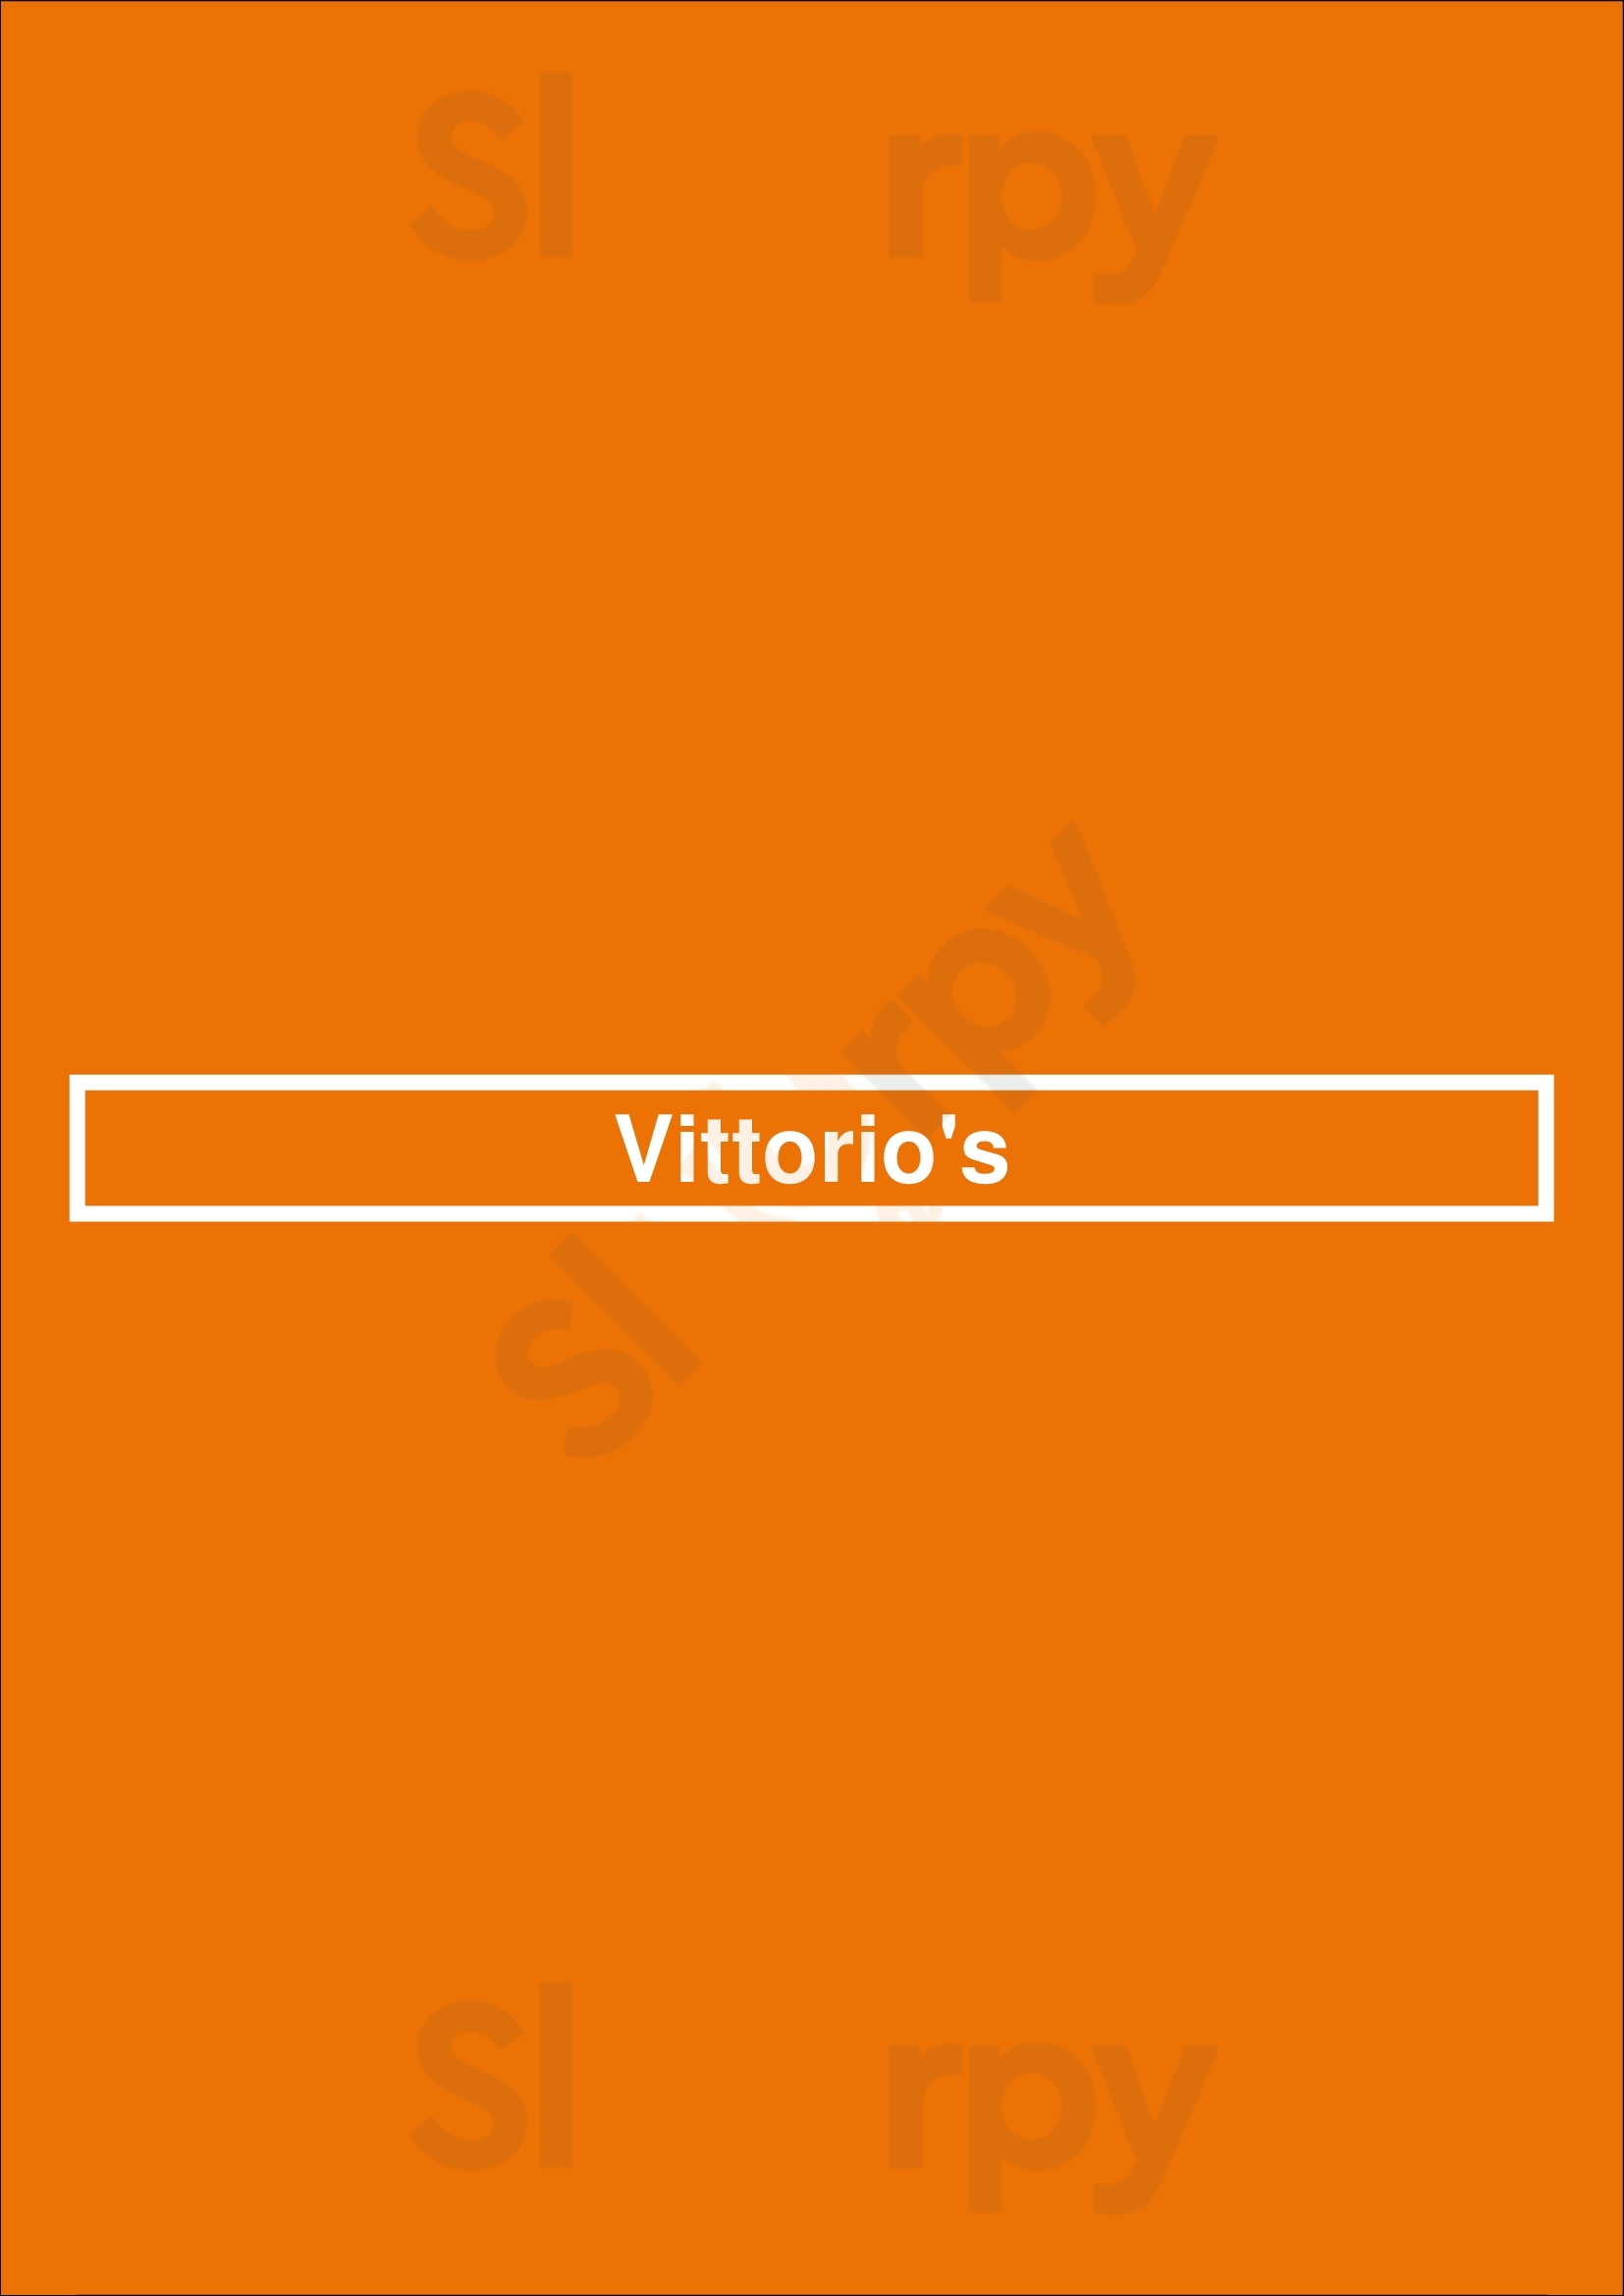 Vittorio's San Diego Menu - 1